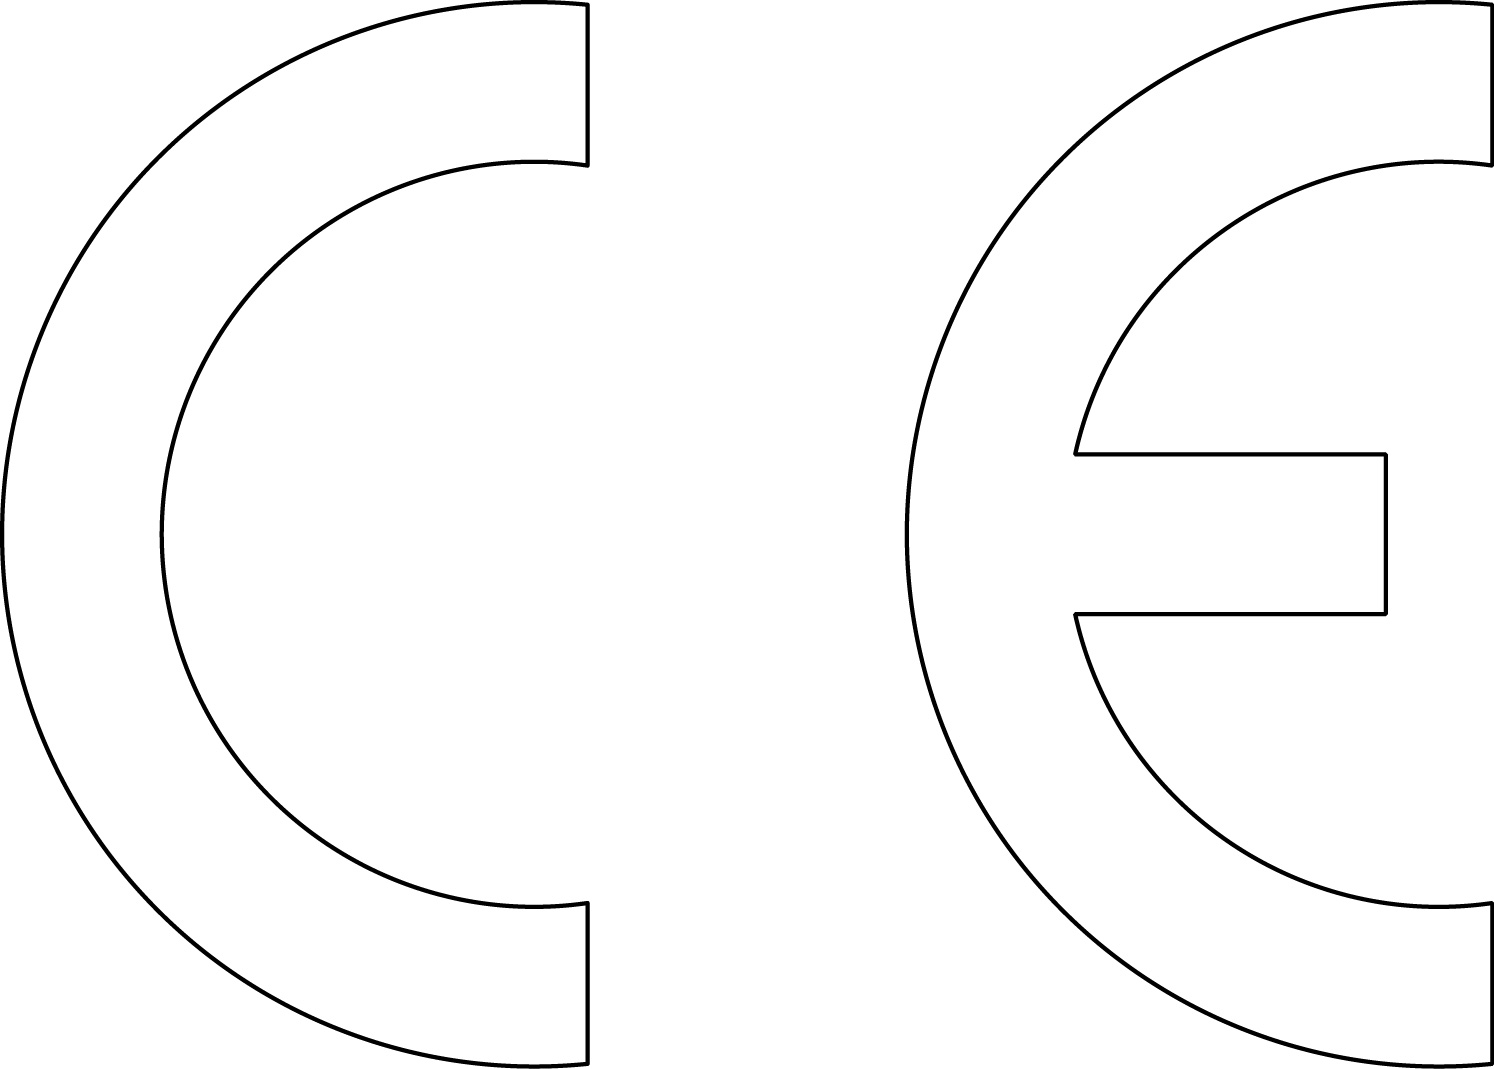 Informationen zur CE-Kennzeichnungspflicht